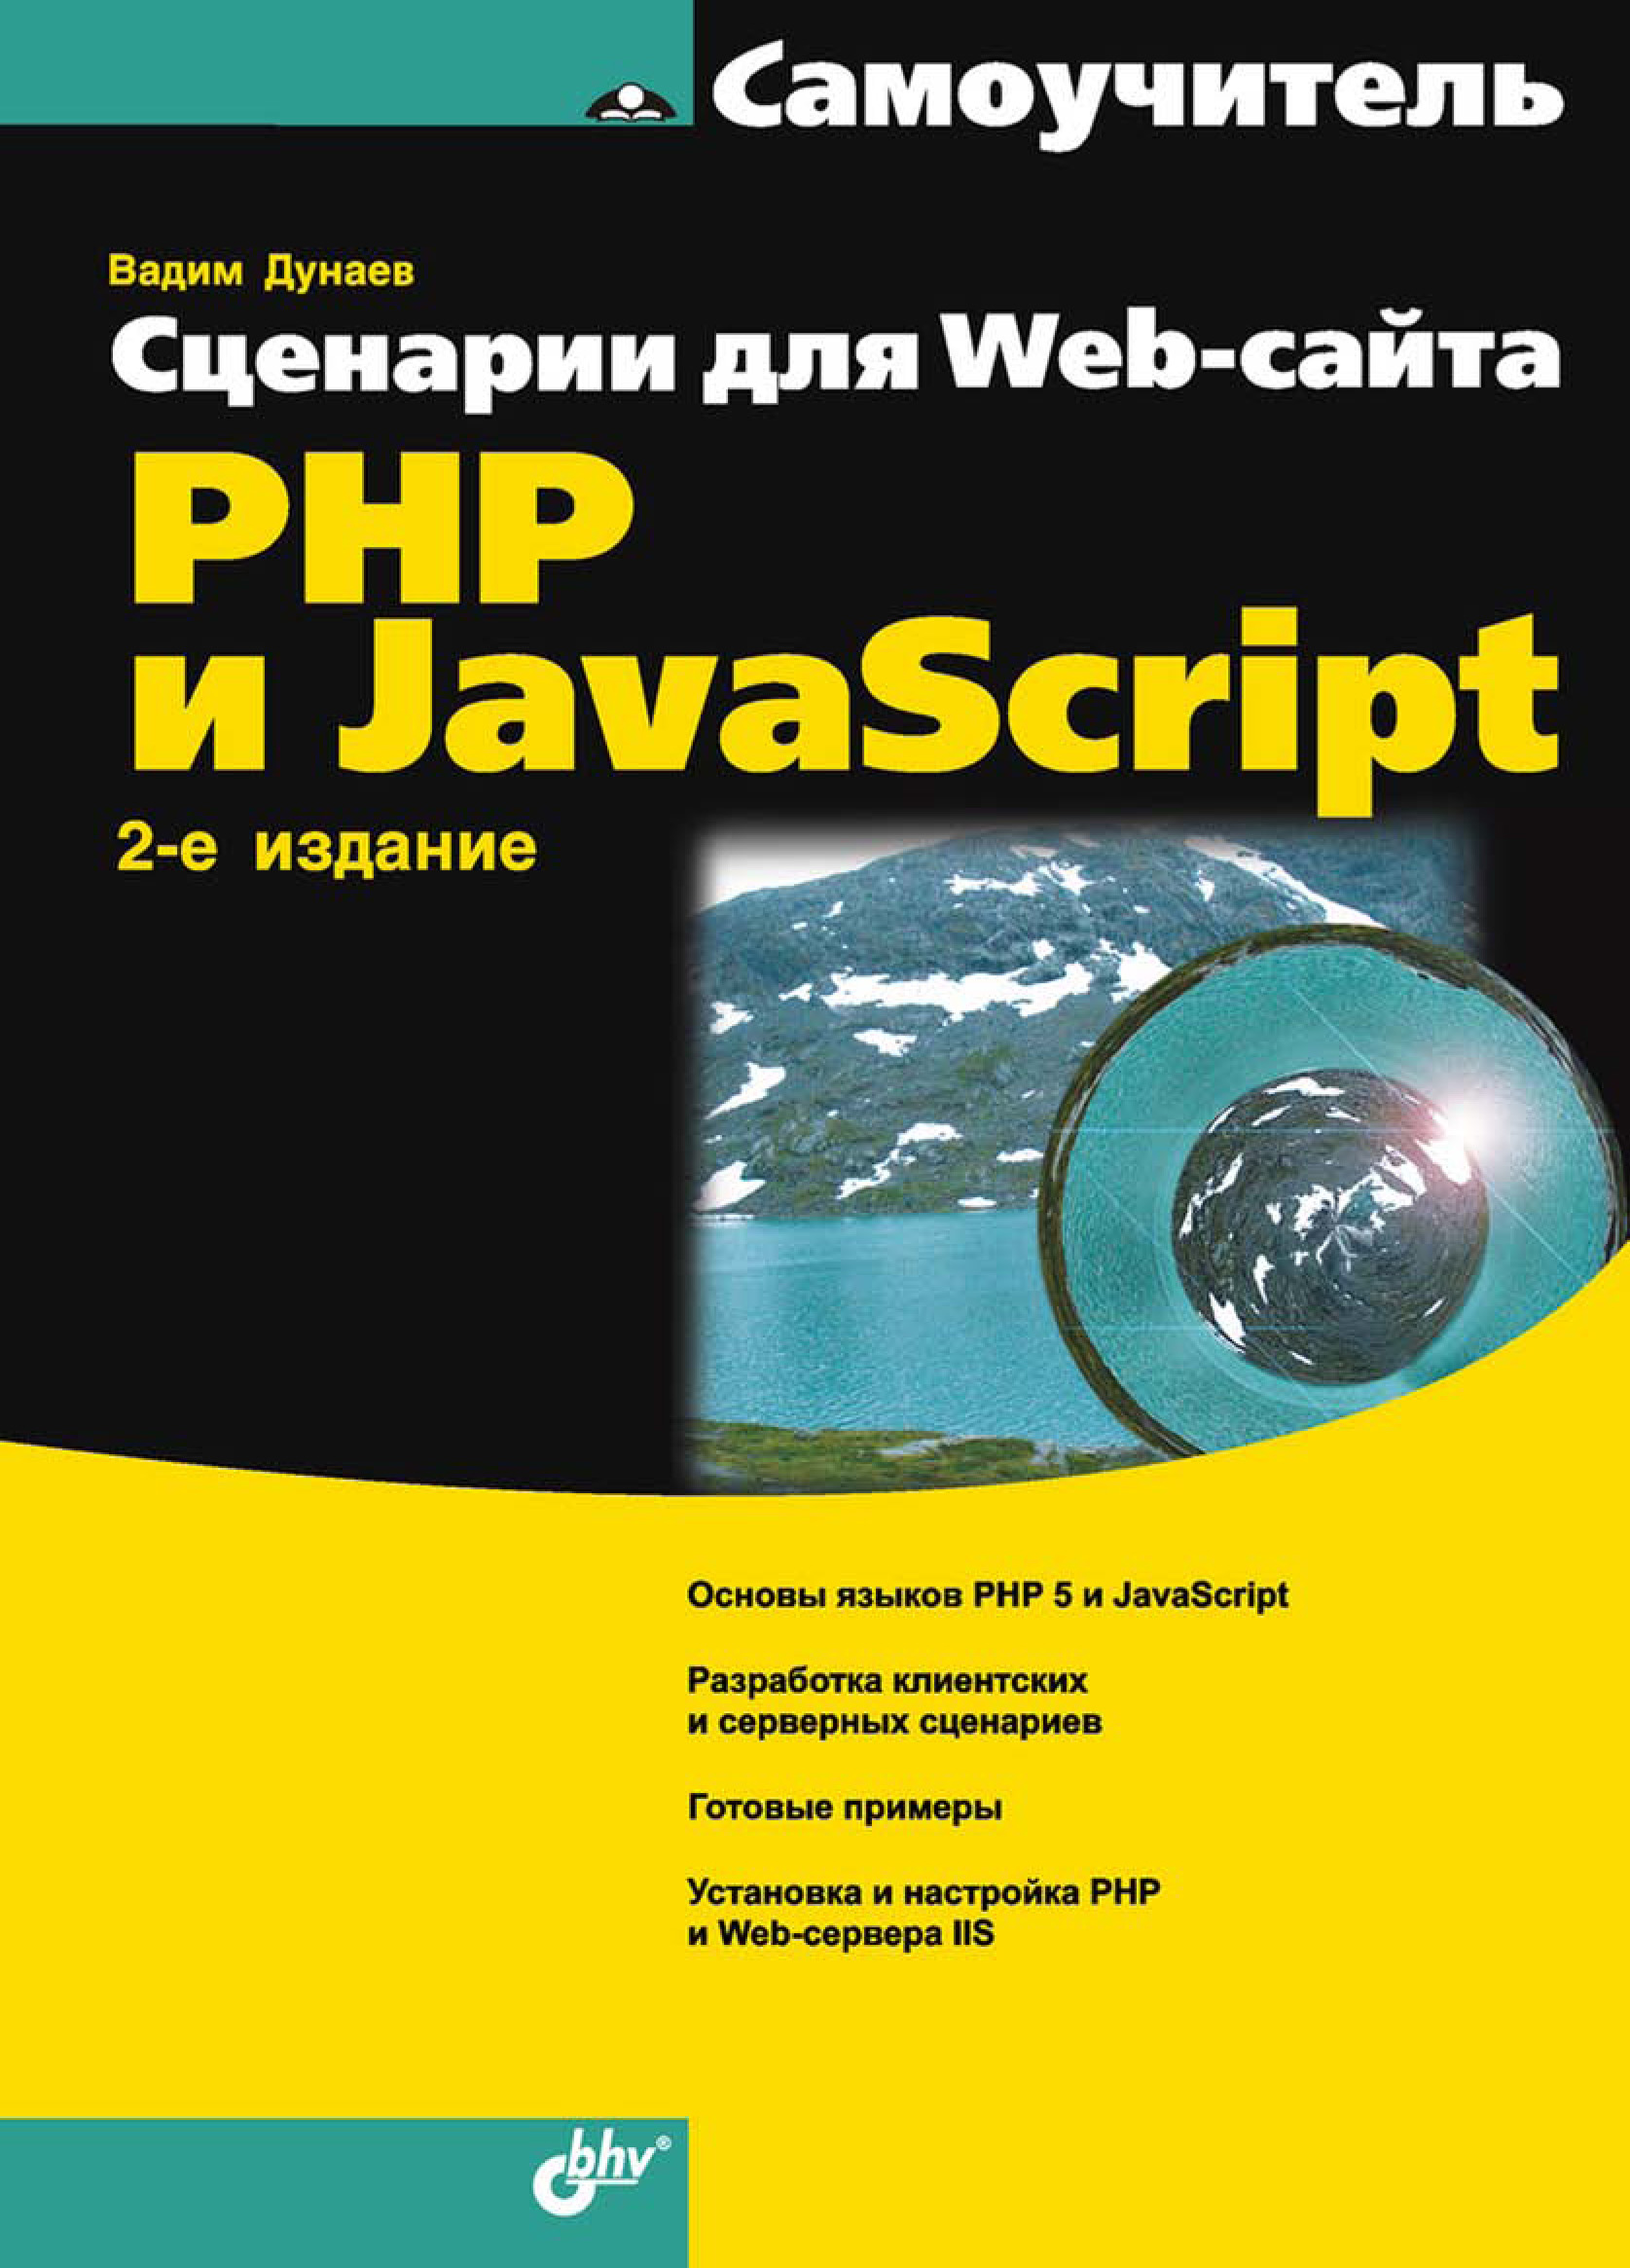 Книга Самоучитель (BHV) Сценарии для Web-сайта. PHP и JavaScript созданная Вадим Дунаев может относится к жанру программирование, самоучители. Стоимость электронной книги Сценарии для Web-сайта. PHP и JavaScript с идентификатором 6988811 составляет 239.00 руб.